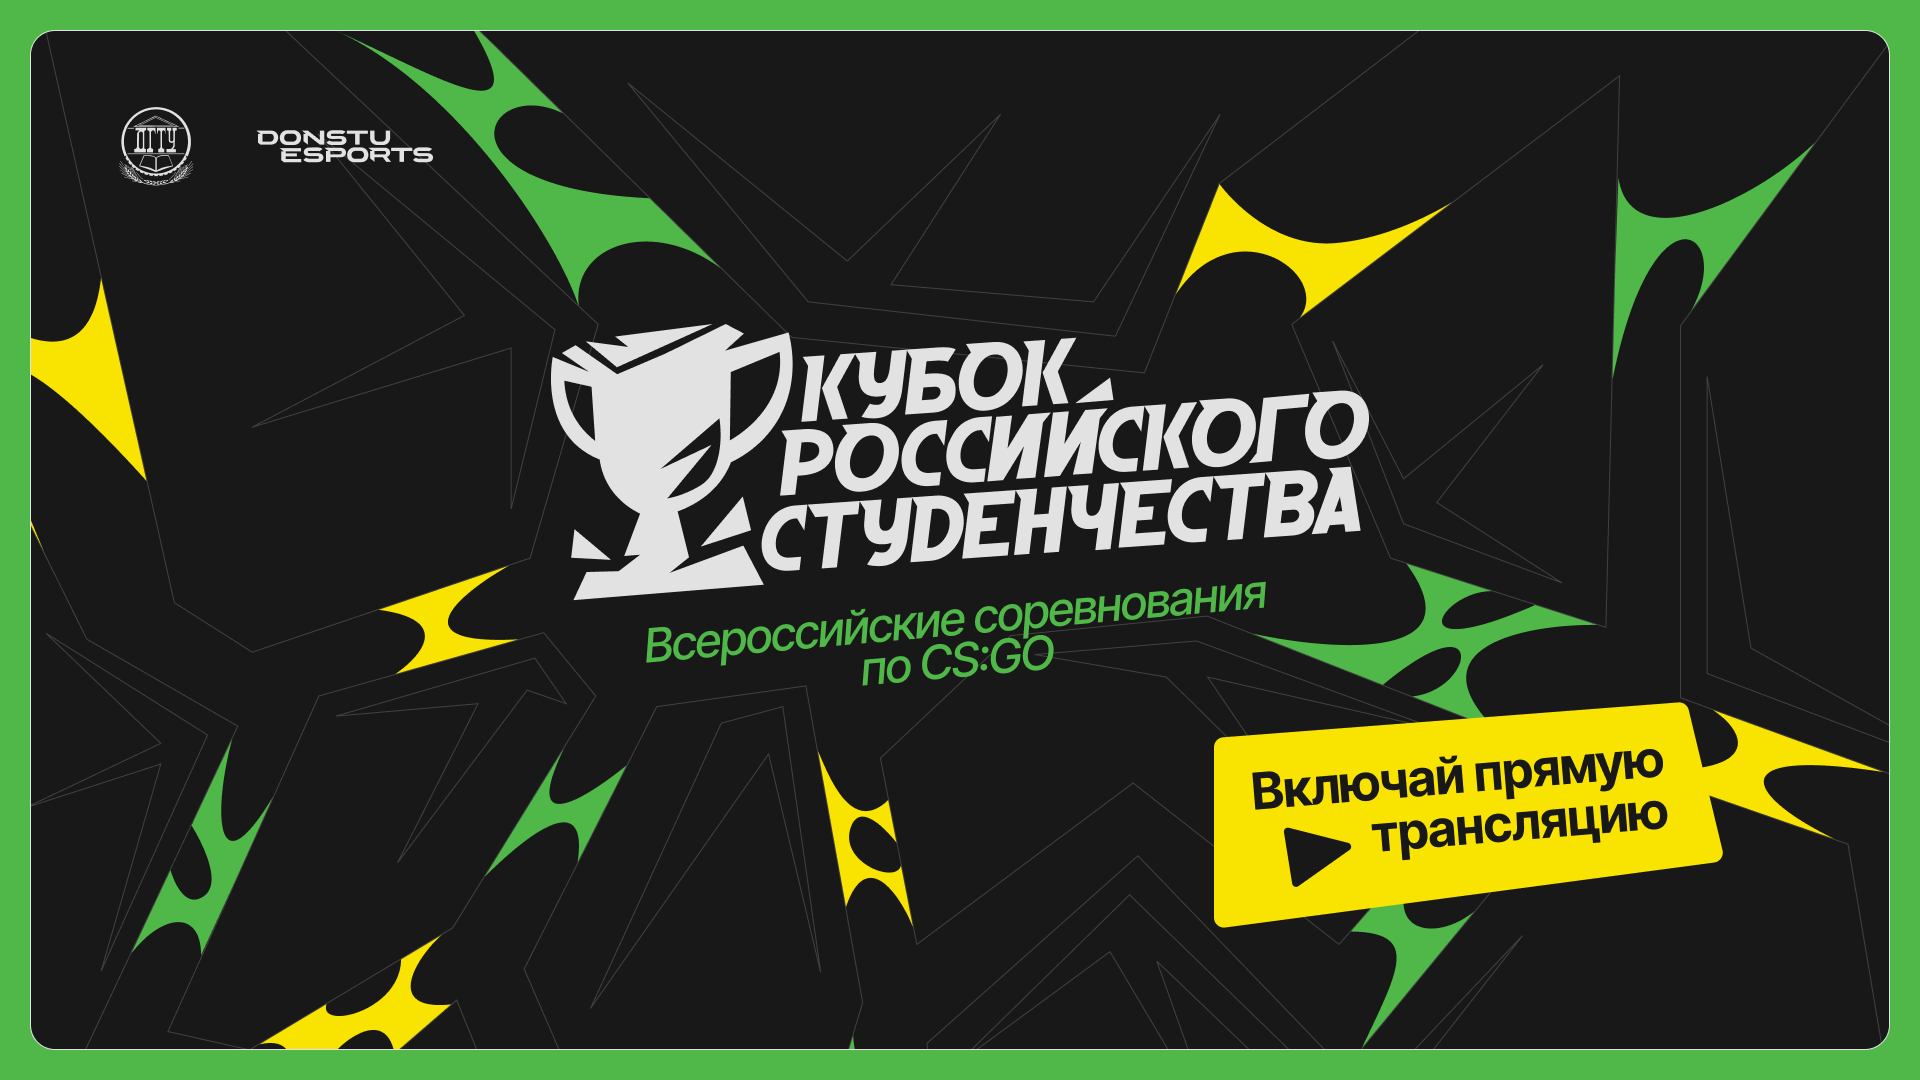 Кубок российского студенчества | ЦФО | Стрим 3 | Donstu Esports